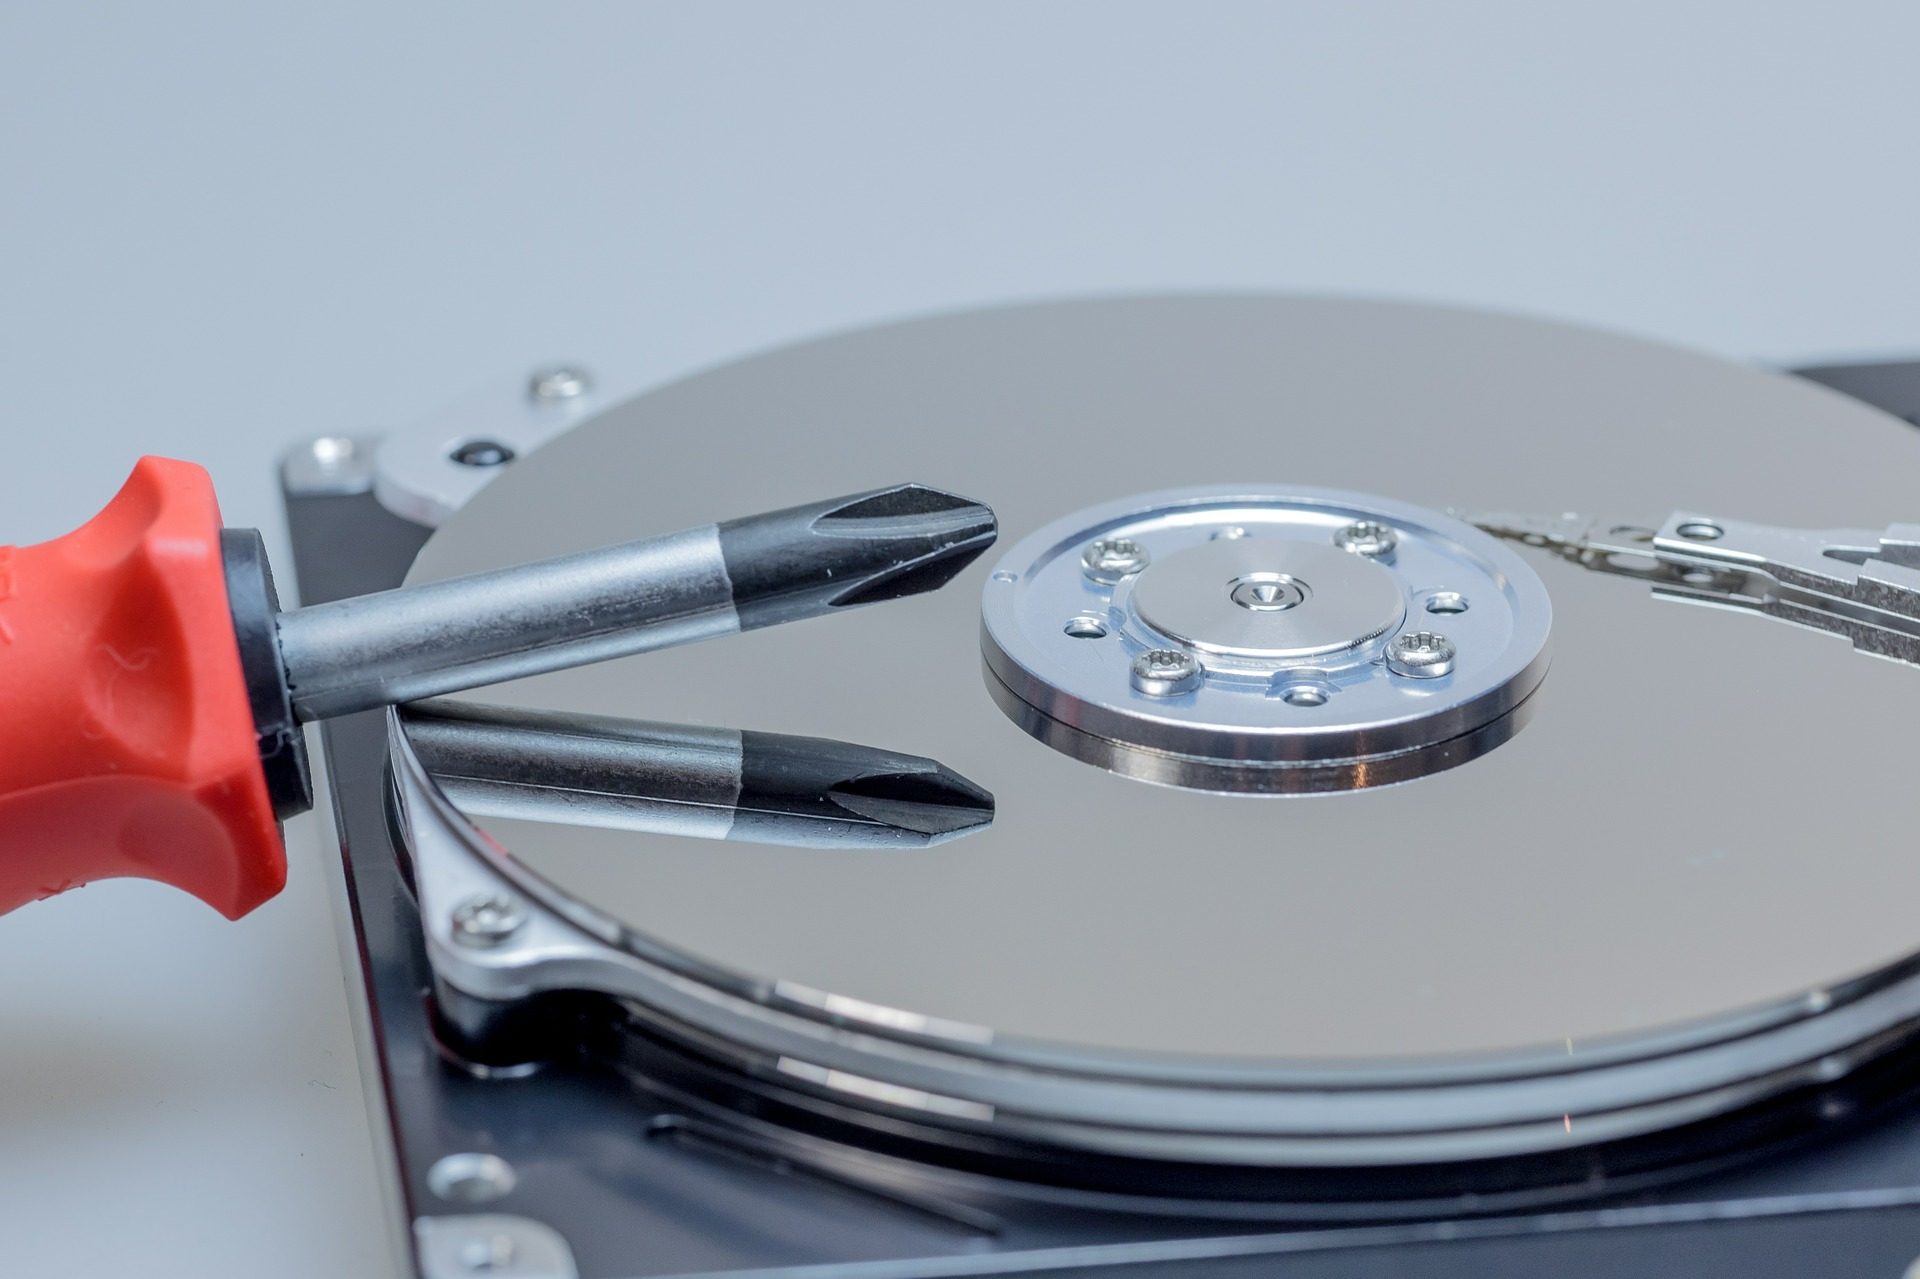 Clé USB, DVD, disque dur… quel est le meilleur support de stockage pour vos  données à (très) long terme ? 